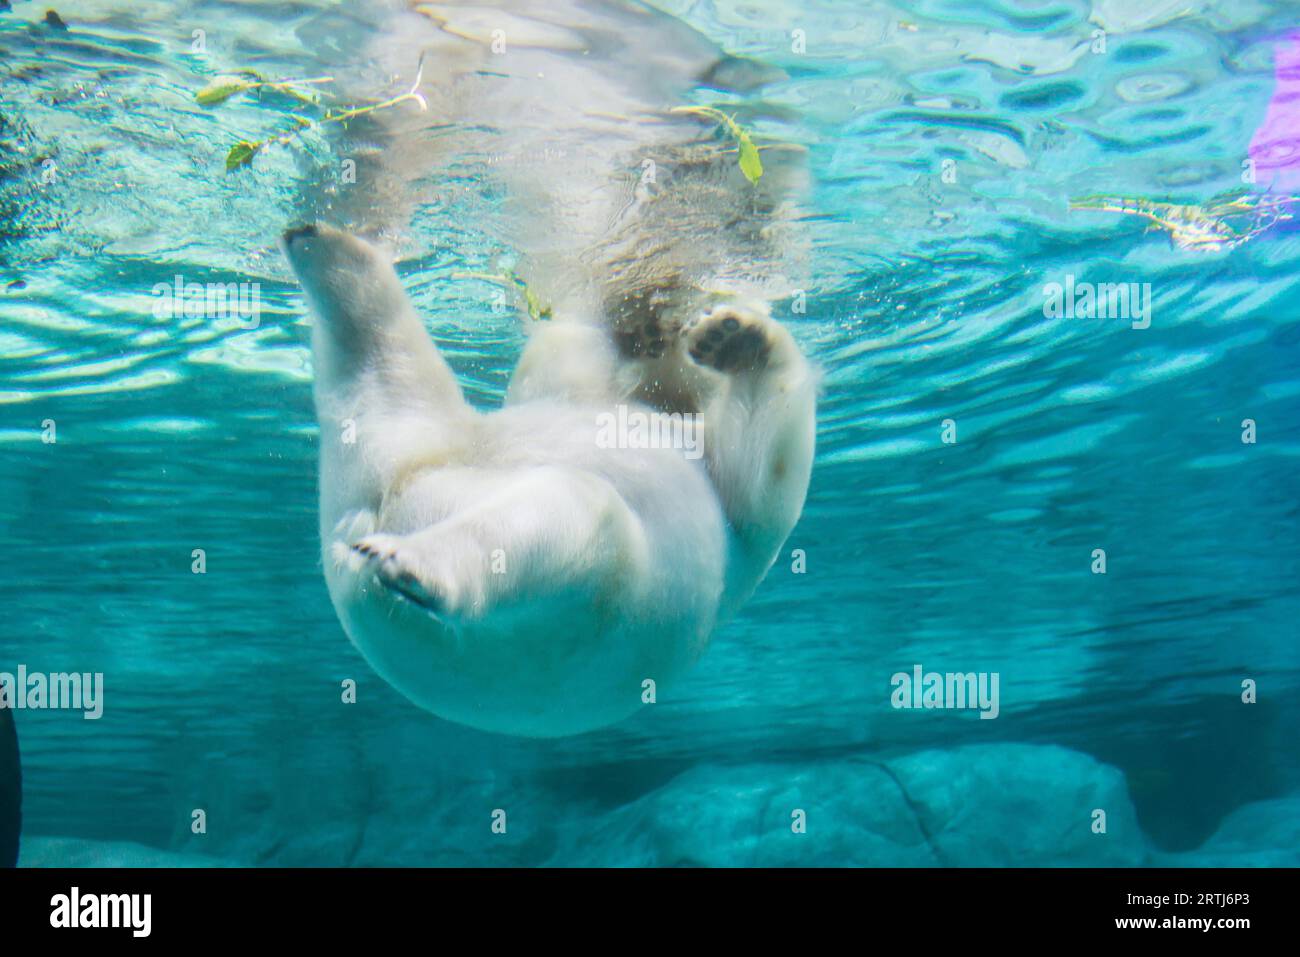 Sao Paulo, Brasilien, 16. januar 2016: Polarbär (auch bekannt als Thalarctos maritimus oder Ursus maritimus) schwimmt unter Wasser Stockfoto